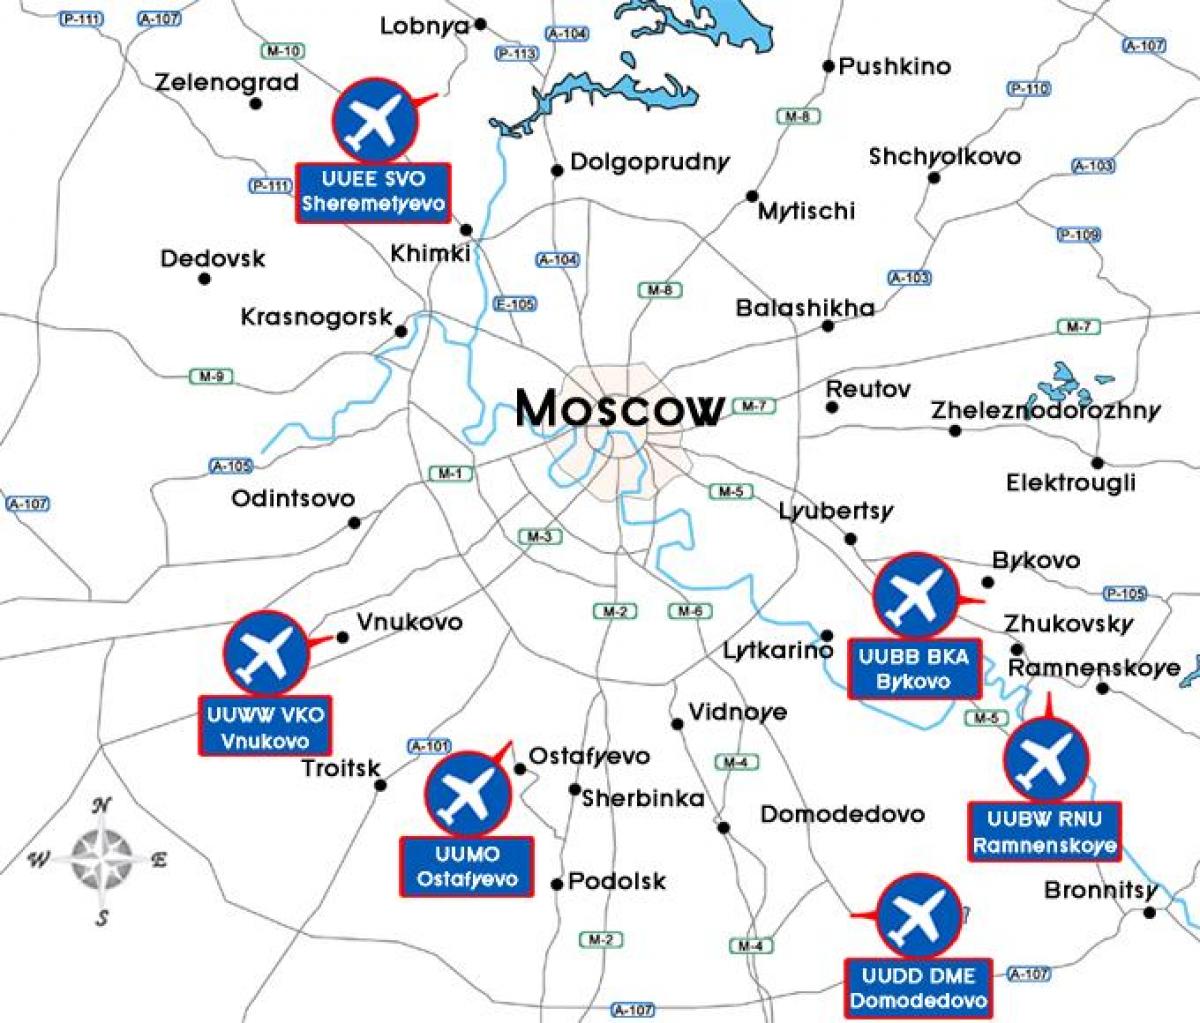 Moskvu mapu terminala